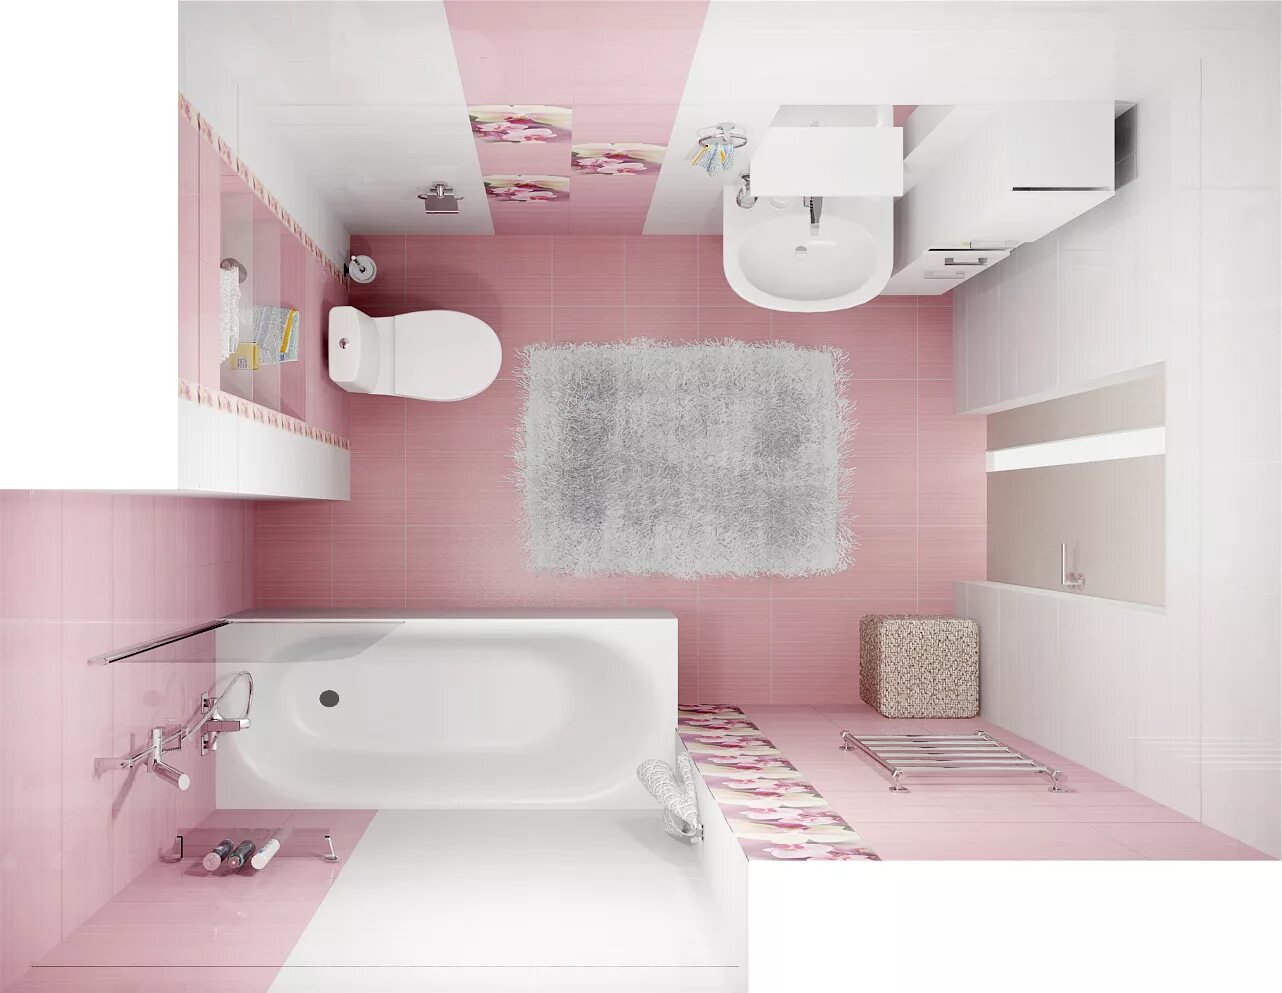 Плитка розовый цвет. Плитка настенная Дельта 20х30 см 1.2 м2 цвет розовый. Плитка Дельта керамика. Розовая плитка для ванной. Розовая ванна.